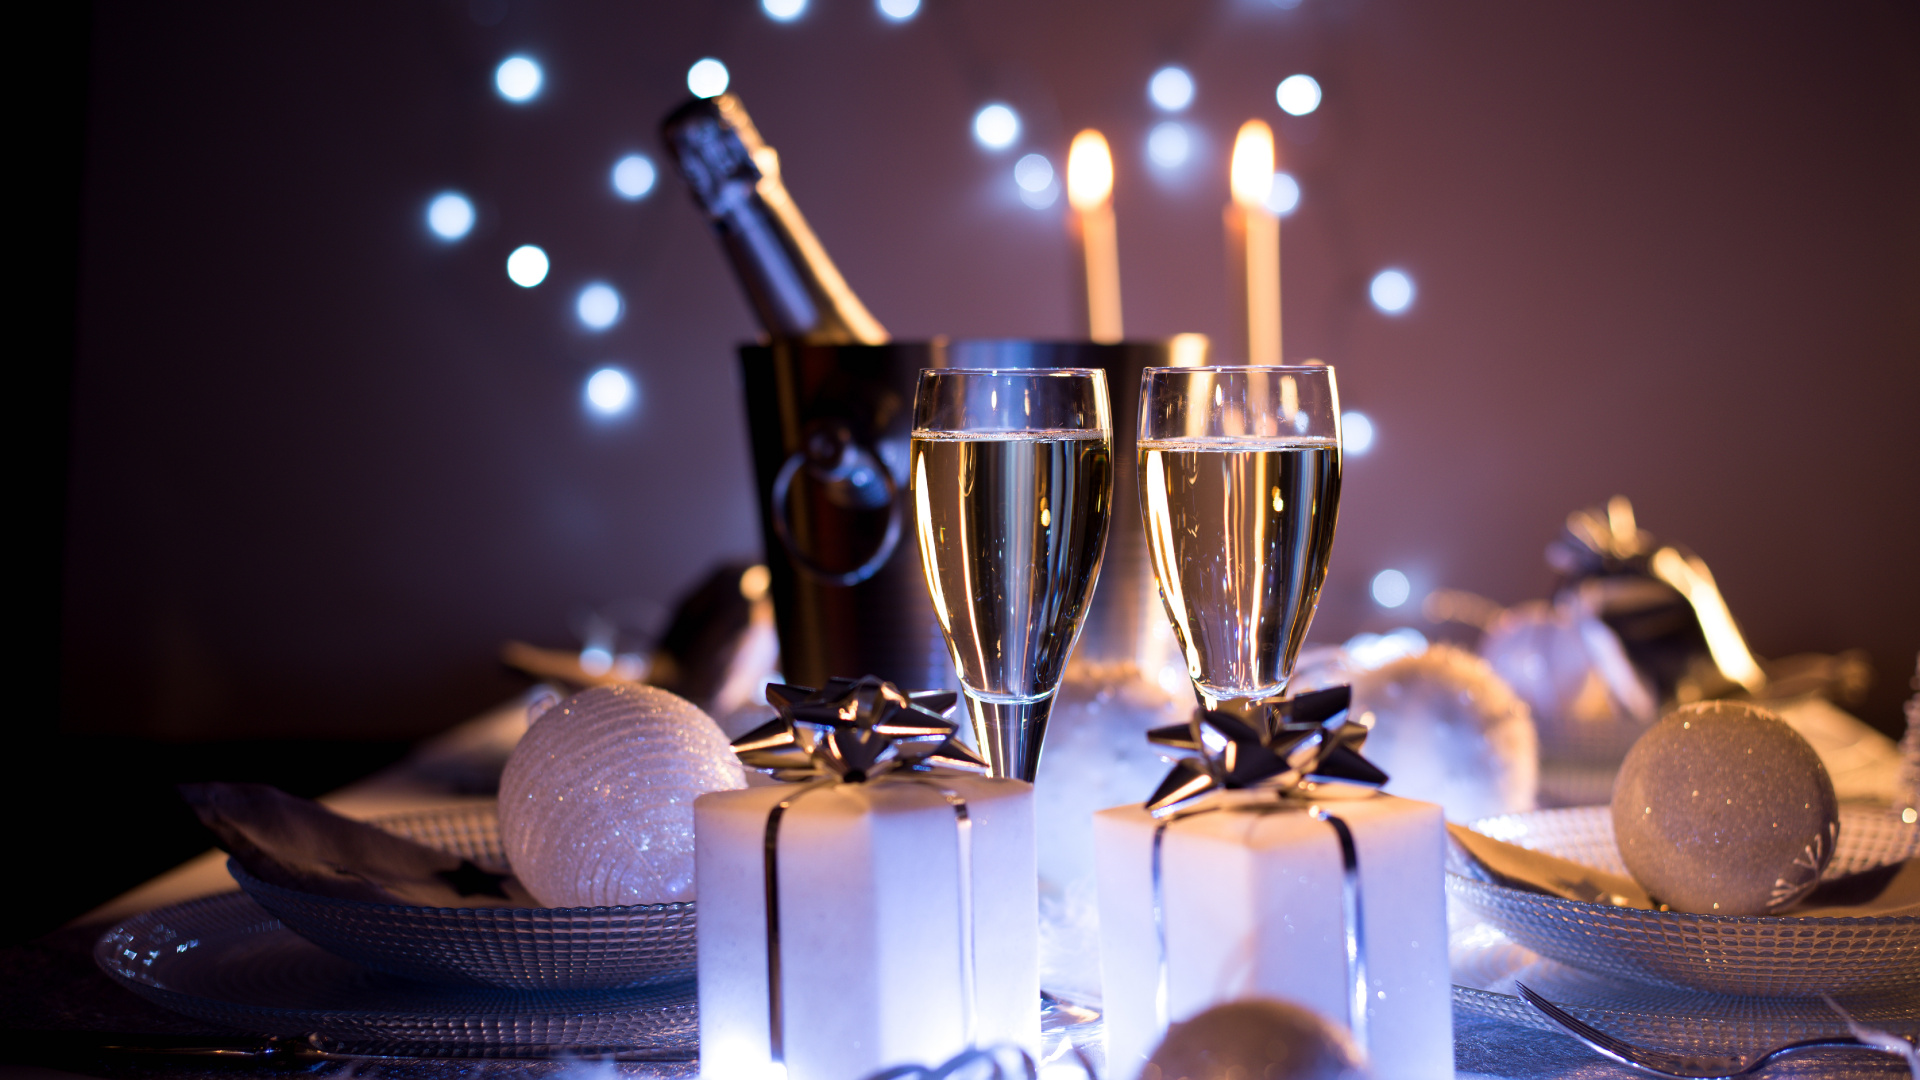 香槟, 葡萄酒, 新年前夕, 新的一年, 仍然生活 壁纸 1920x1080 允许